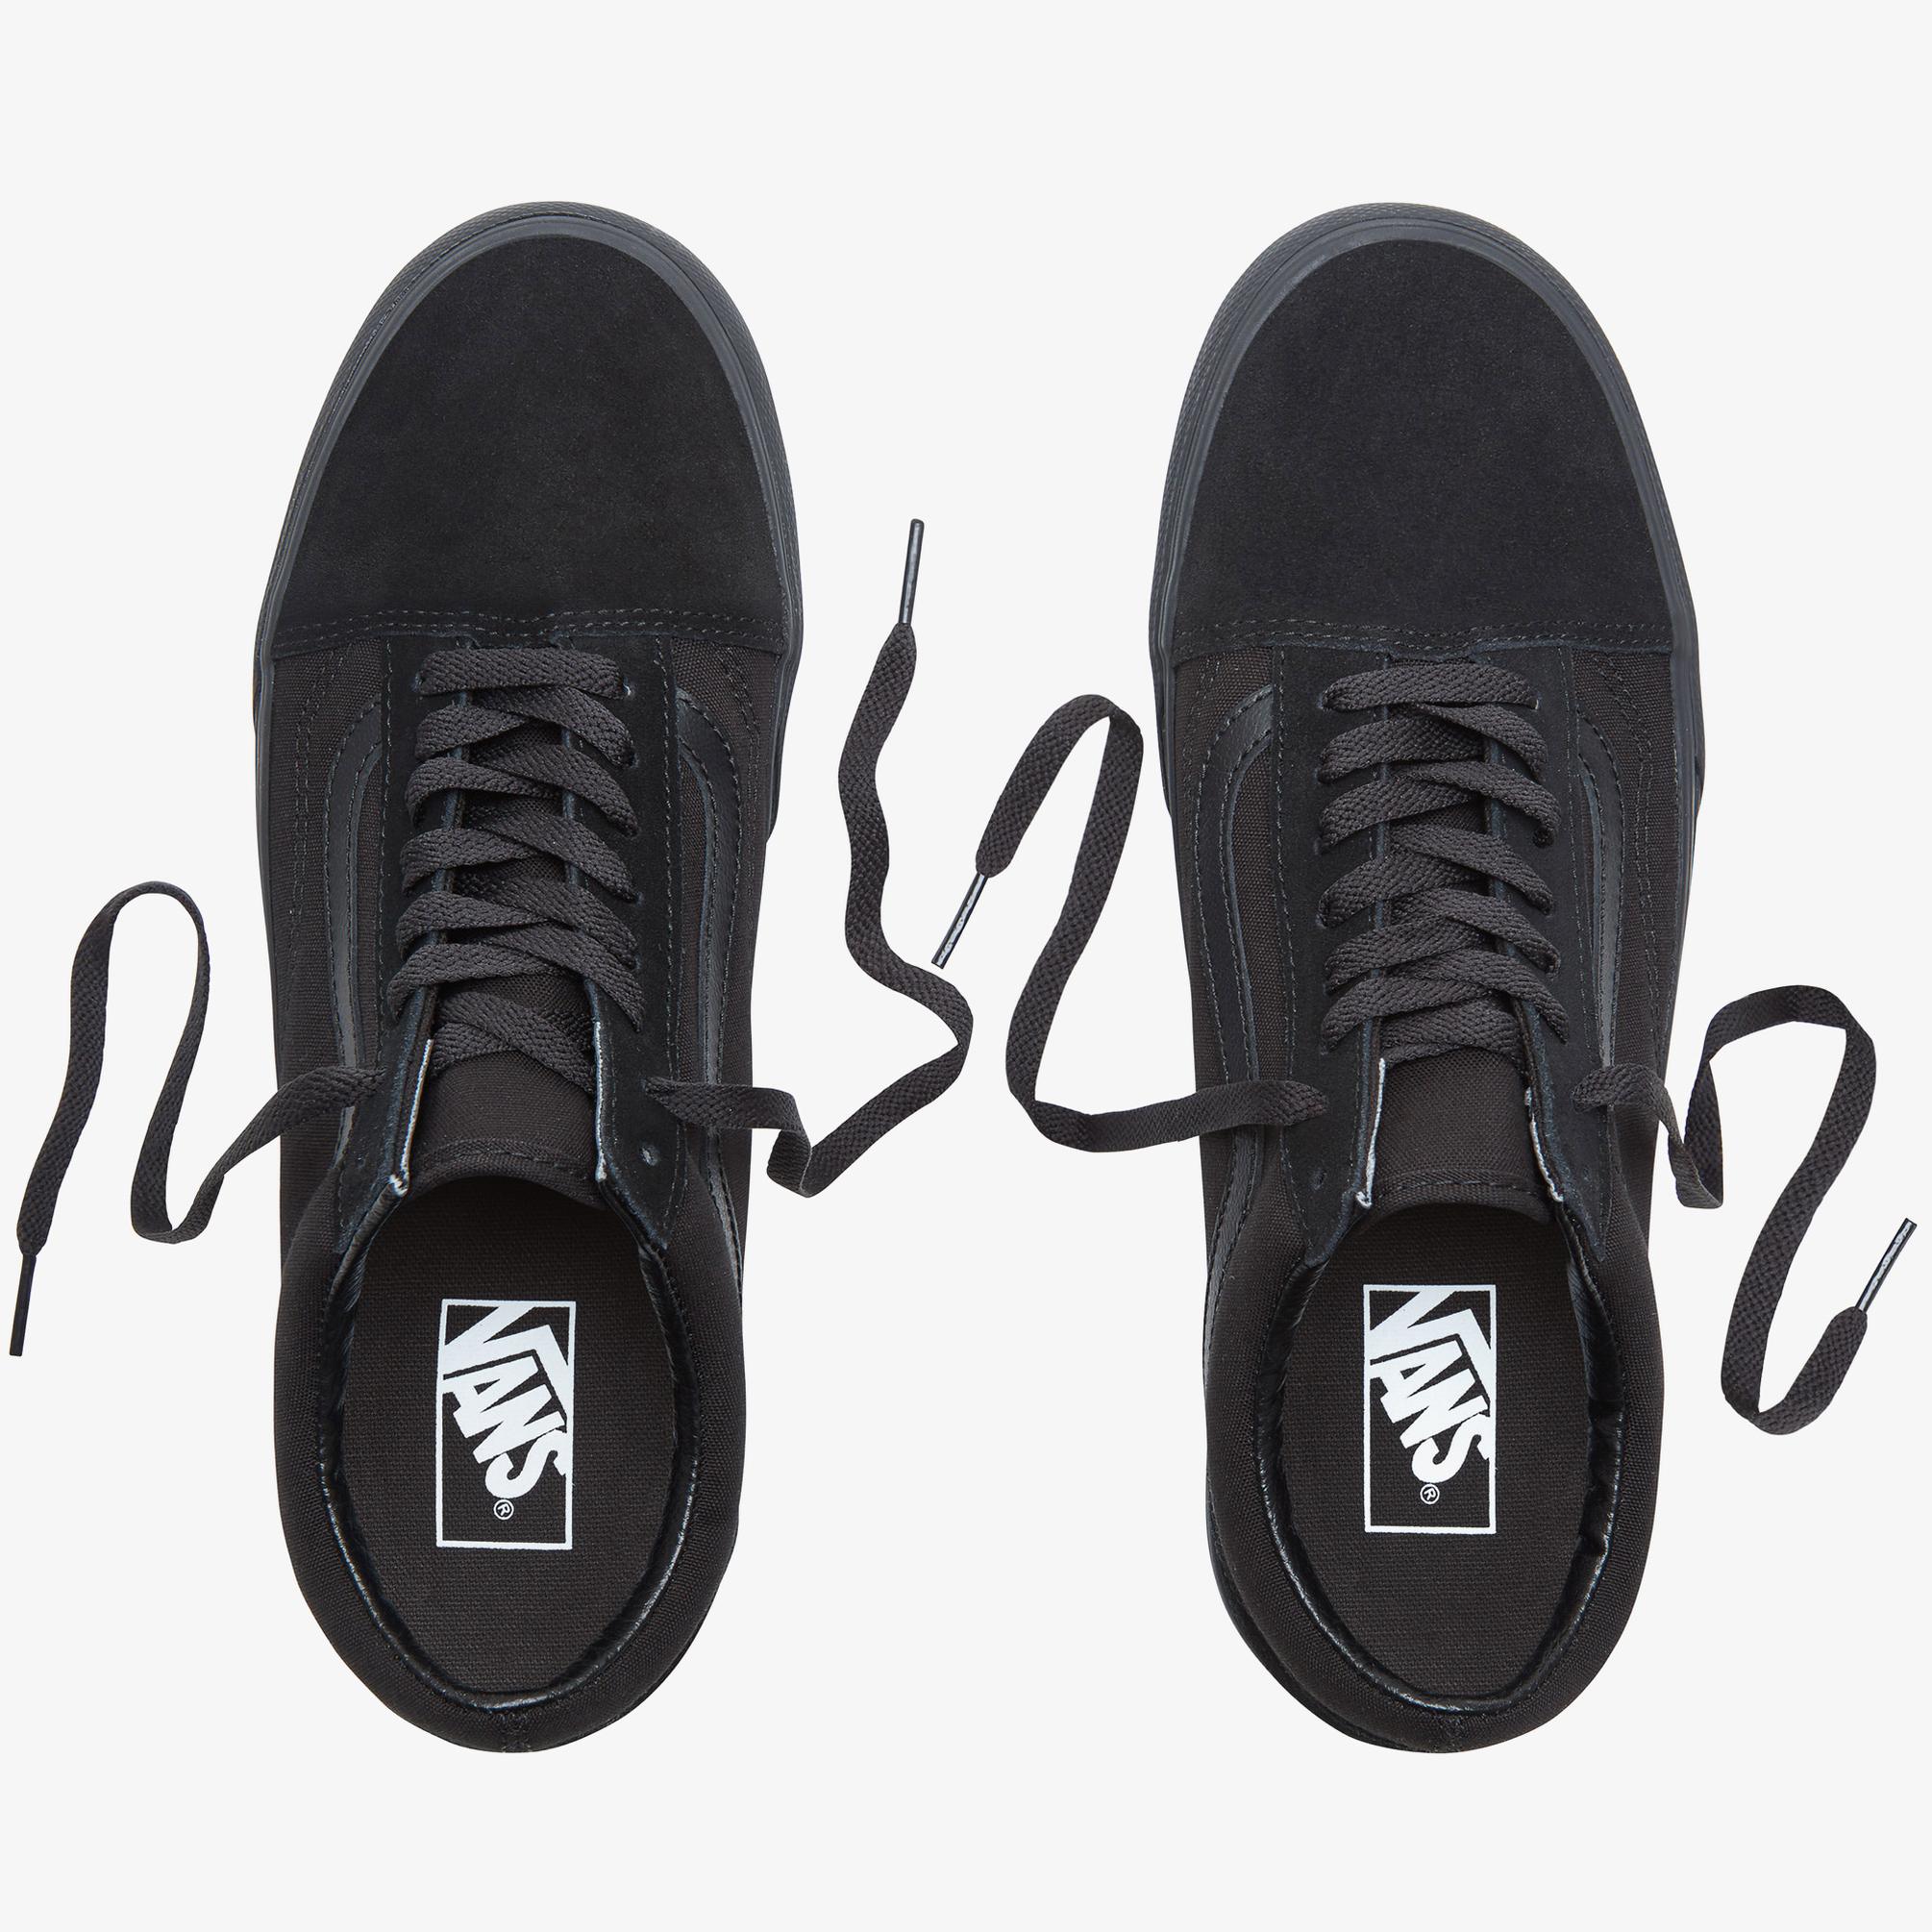  Vans Old Skool Platform Kadın Siyah Sneaker